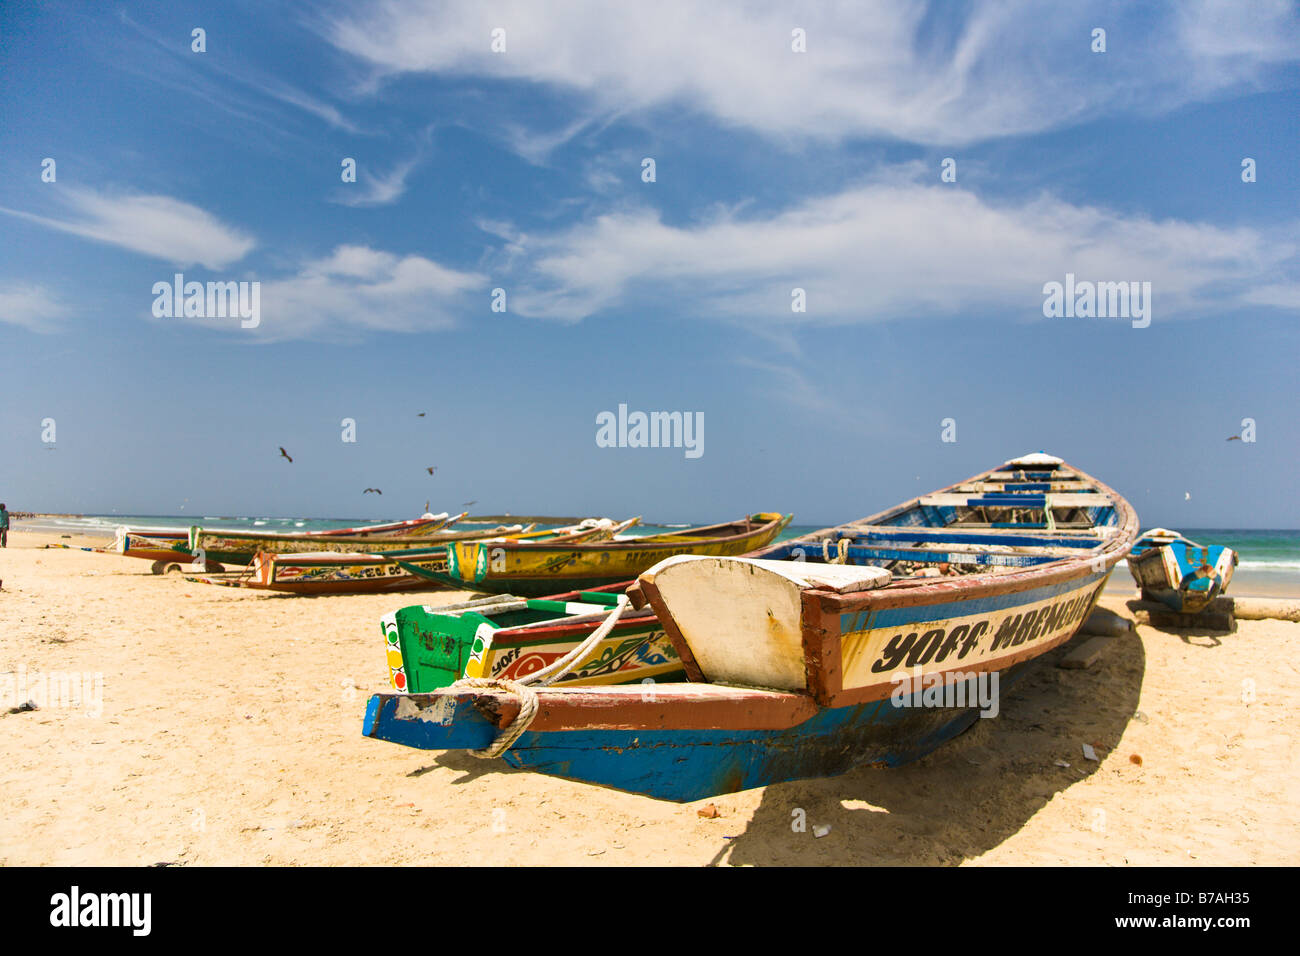 Les bateaux peints de couleurs vives bordent la plage de Yoff, un village de pêcheurs à 30 minutes à l'extérieur de la capitale du Sénégal ville de Dakar. Banque D'Images